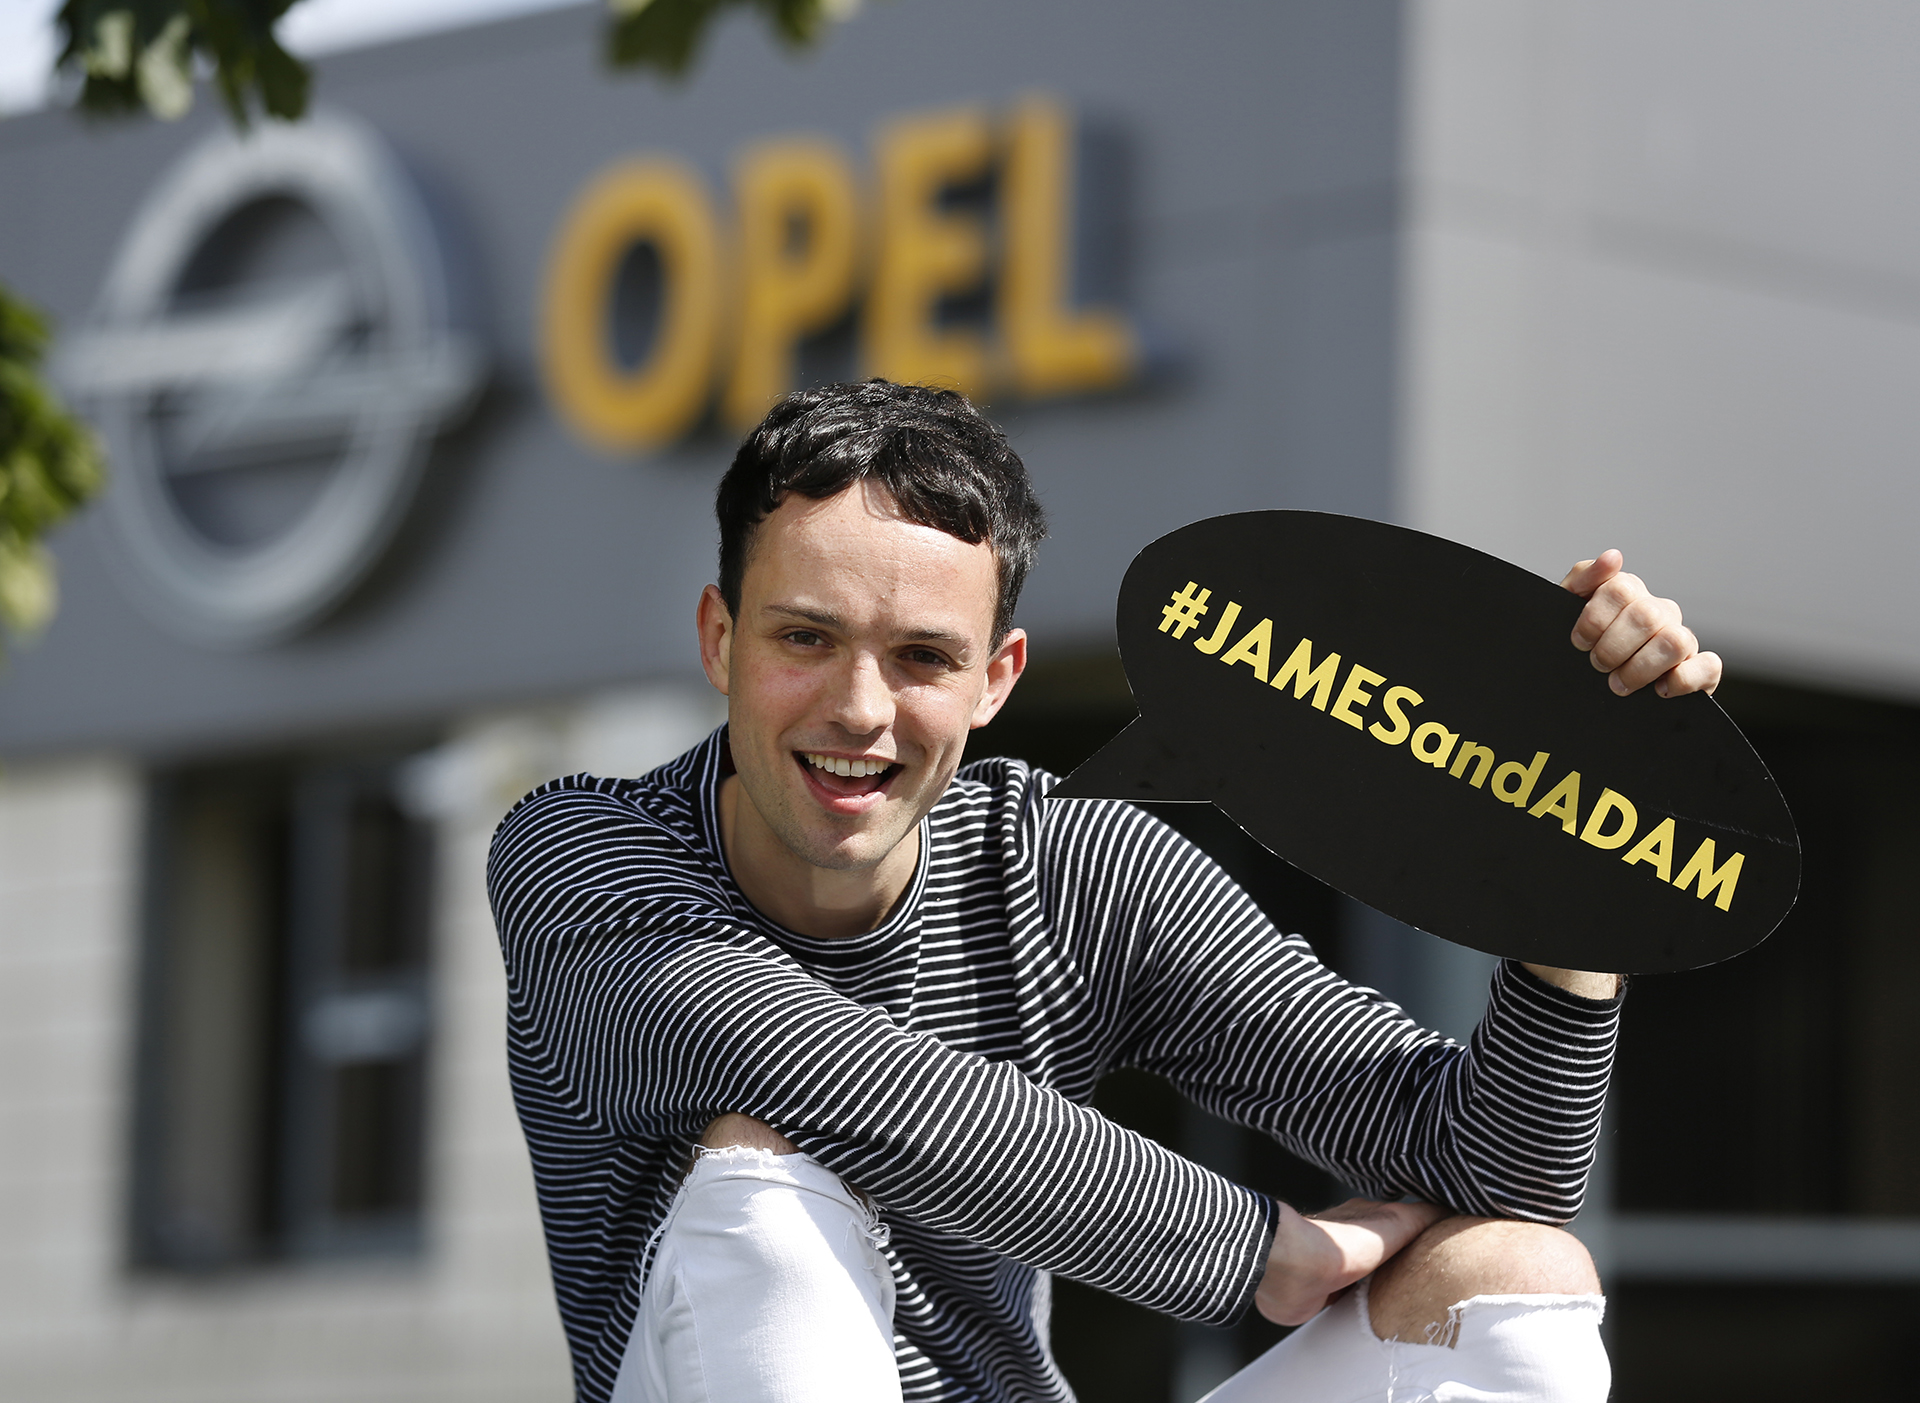 James Kavanagh, Opel Brand Ambassador